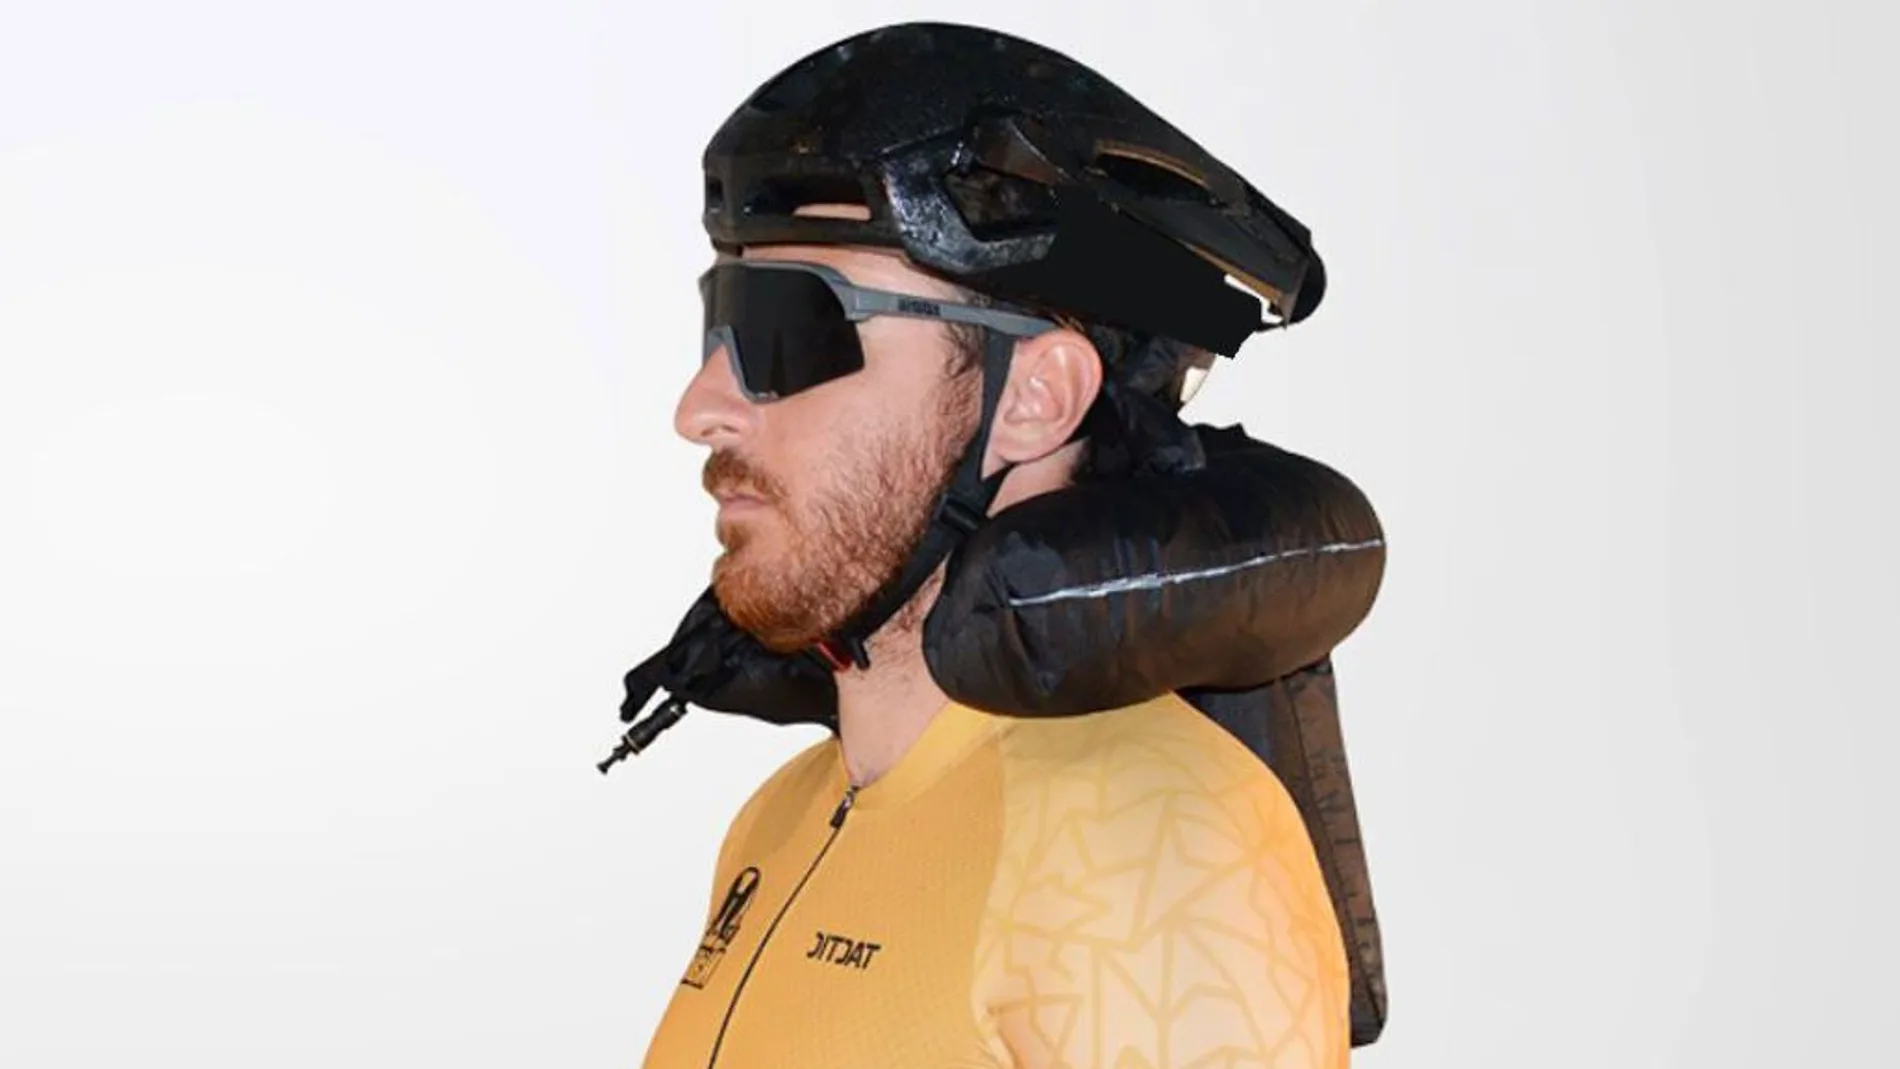 El primer sistema de airbag integrado en un casco de bicicleta